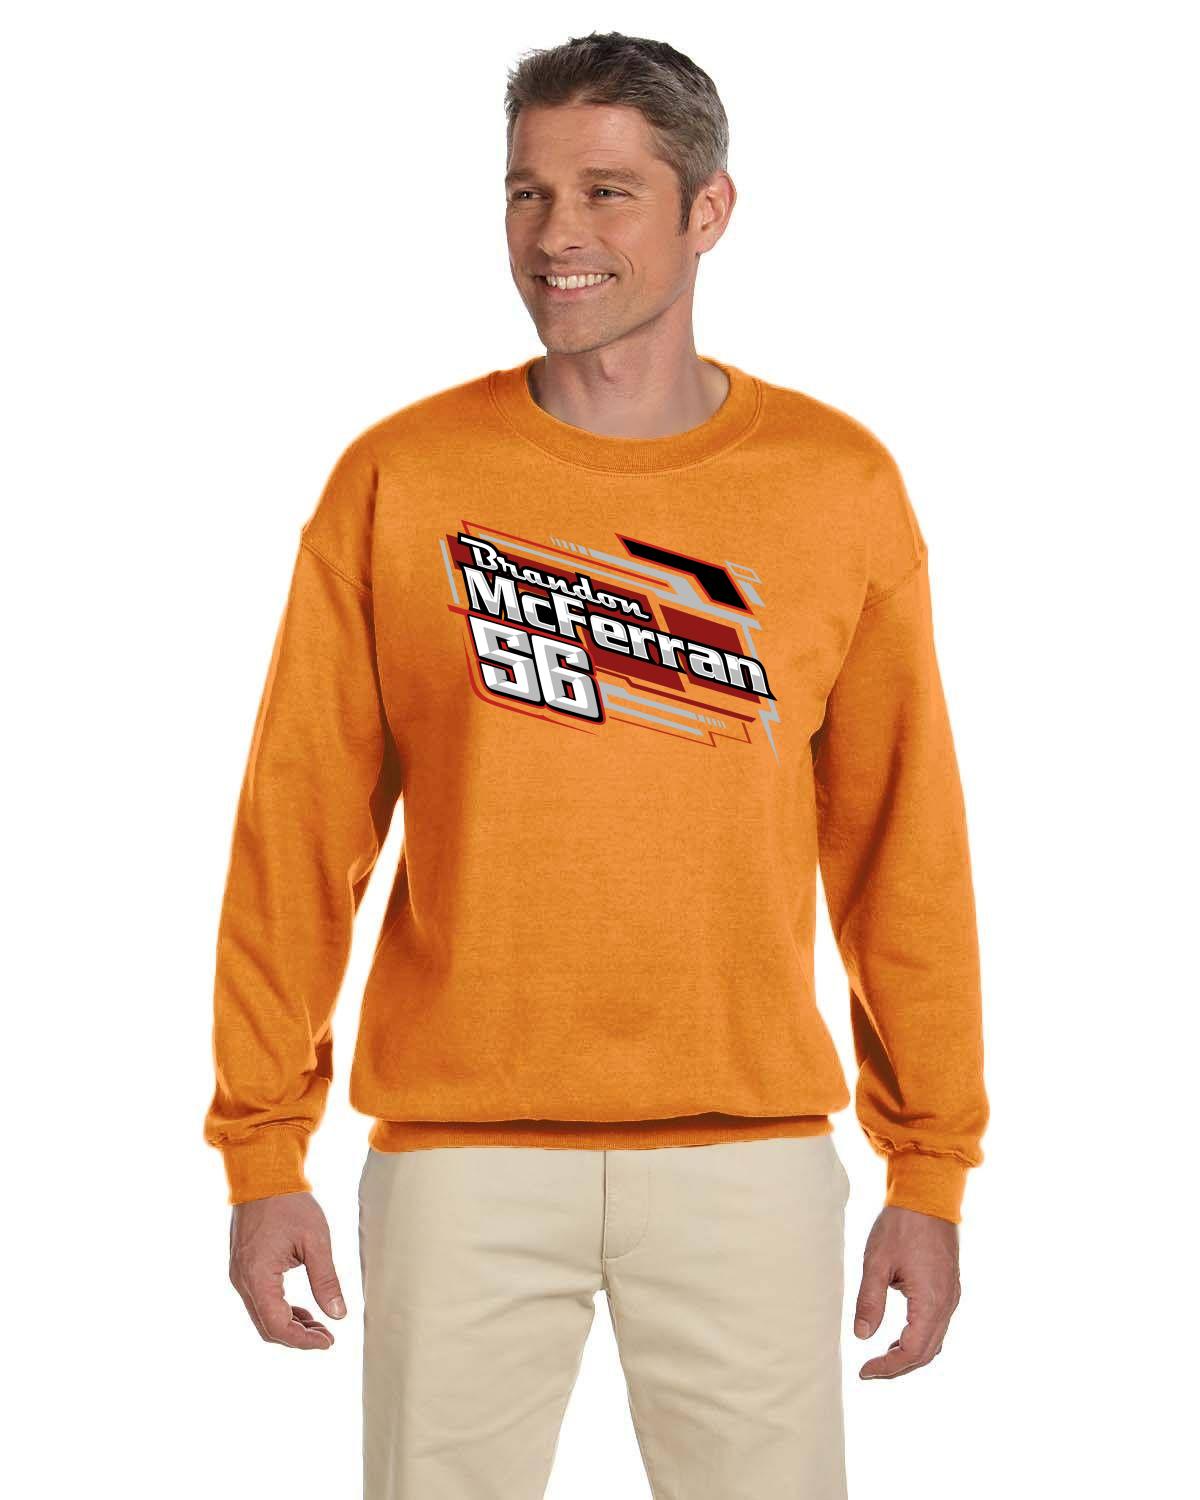 Brandon McFerran Racing Adult crew neck sweater